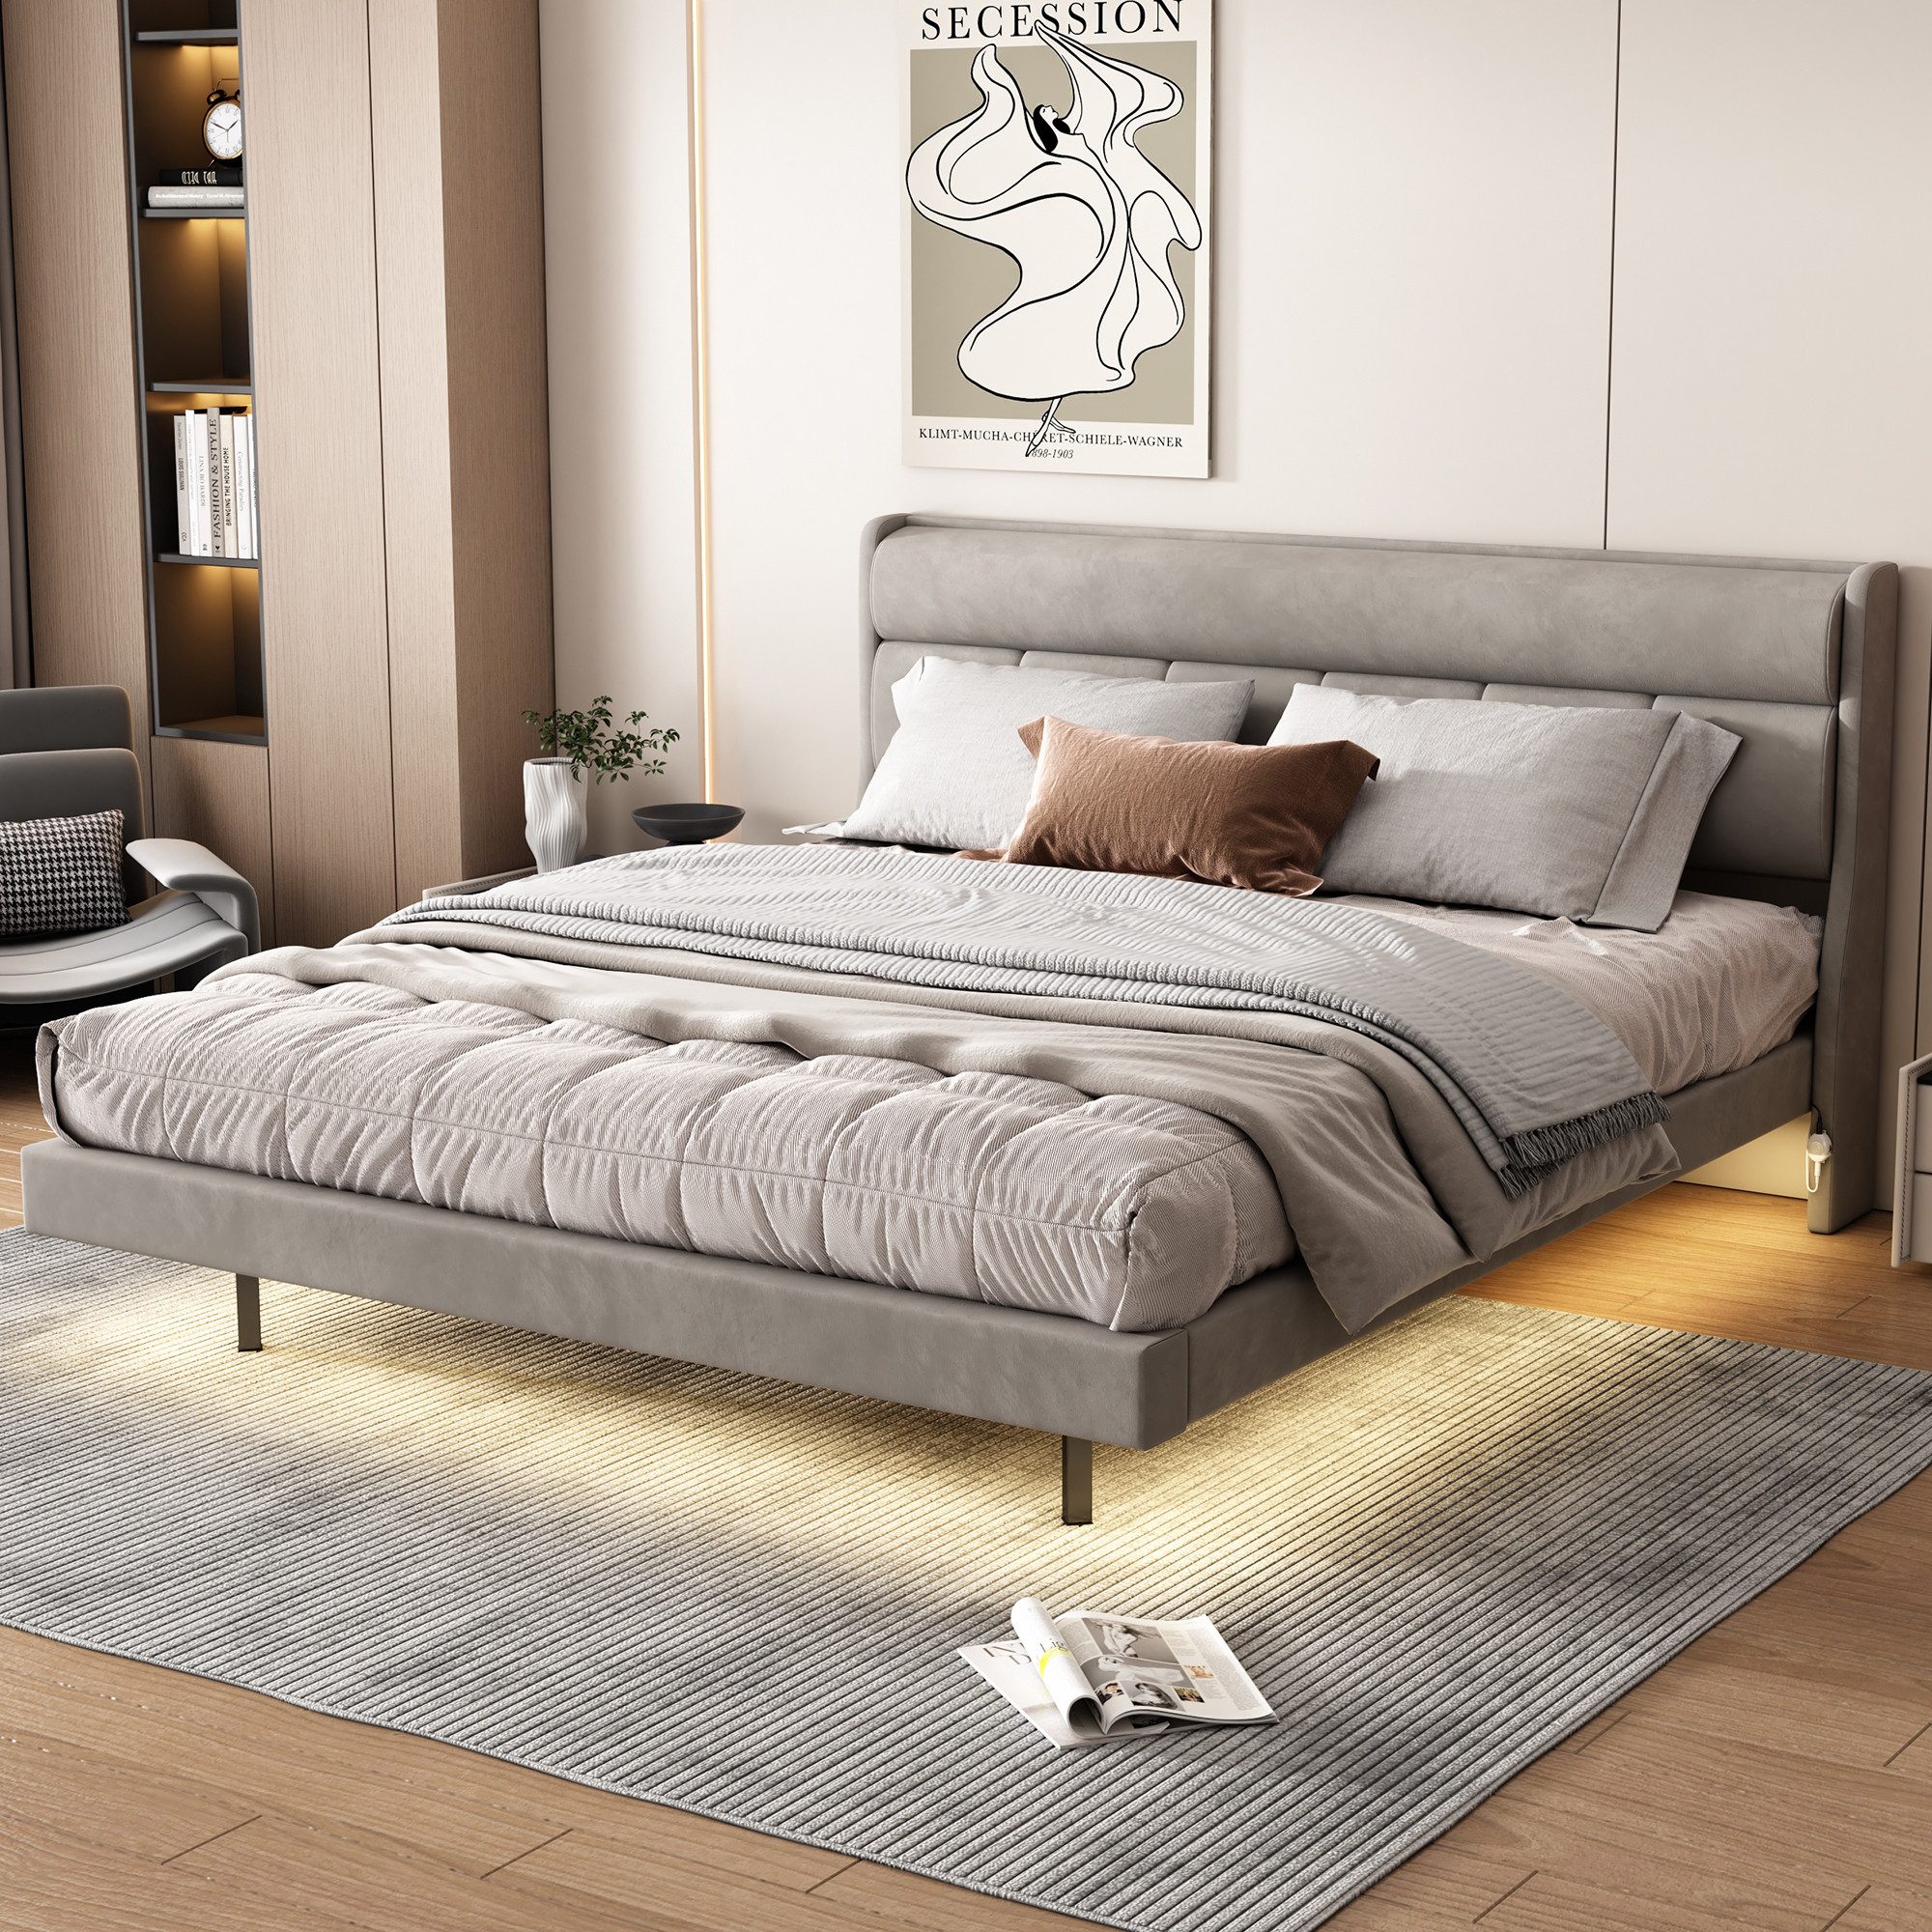 MODFU Polsterbett flaches Bett, schwebendes Bett (ausgestattet mit menschlichem Sensorlicht, warm gepolstert), ohne Matratze, 180x200 cm